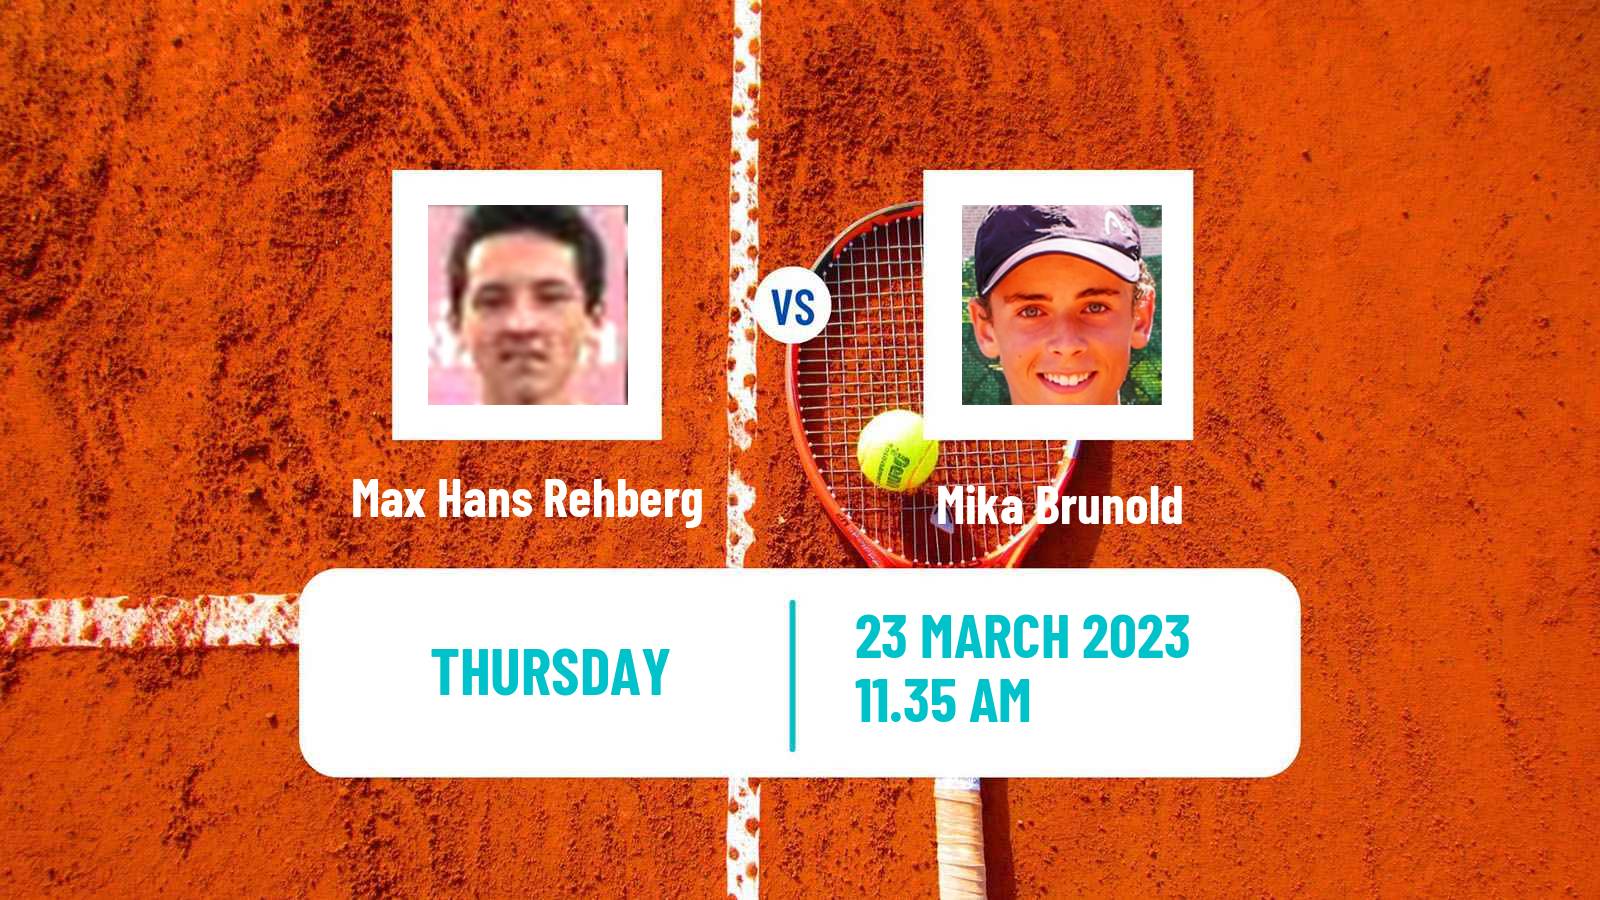 Tennis ATP Challenger Max Hans Rehberg - Mika Brunold